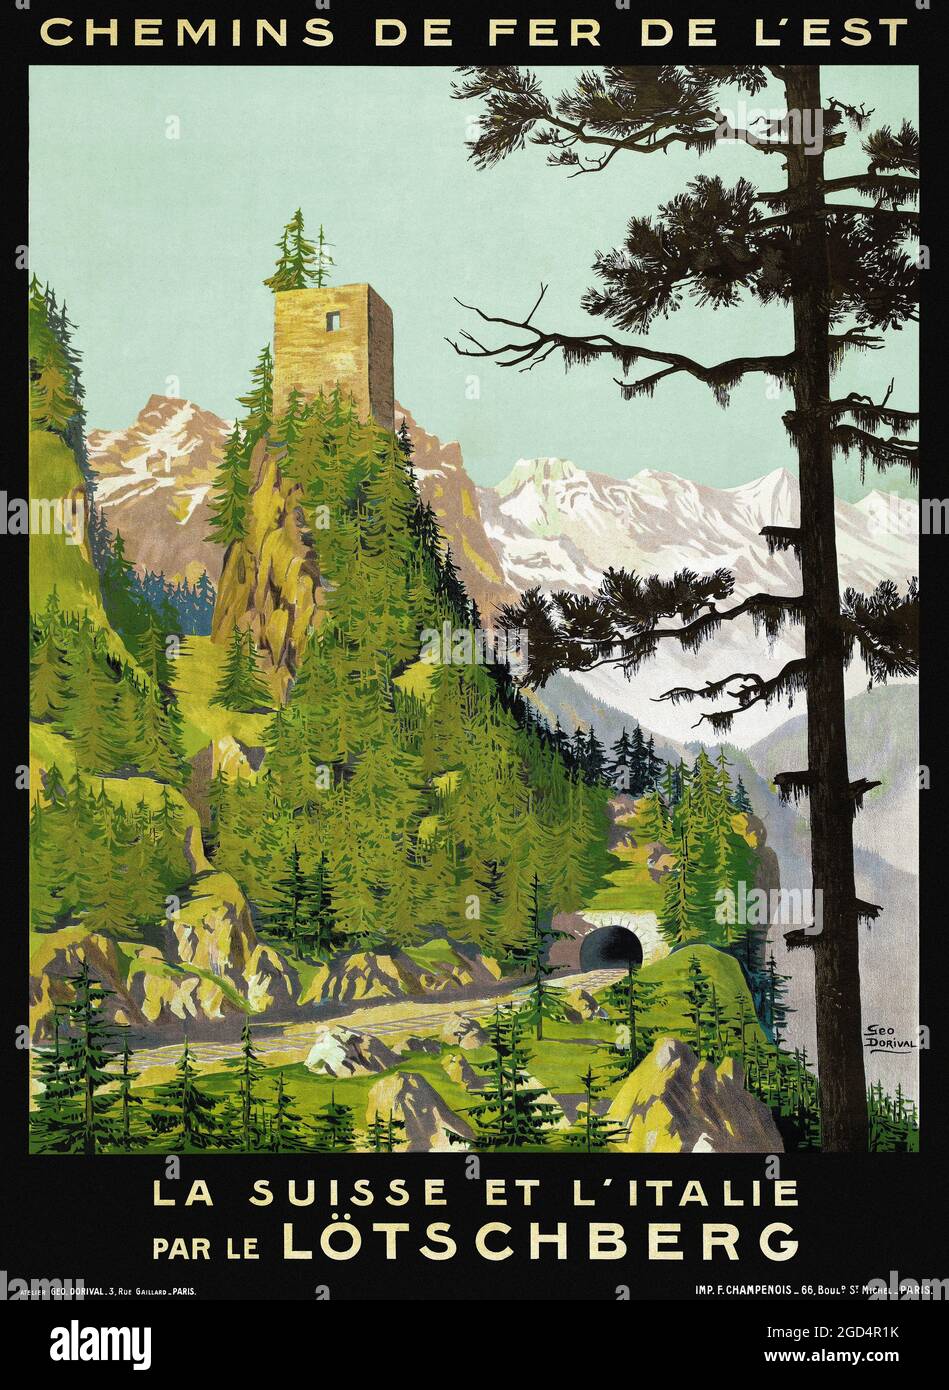 Chemins de Fer de l'Est. La Suisse et l'Italie par le Lötschberg de Geo Dorival (1879-1968). Póster vintage restaurado publicado en 1910 en Suiza. Foto de stock